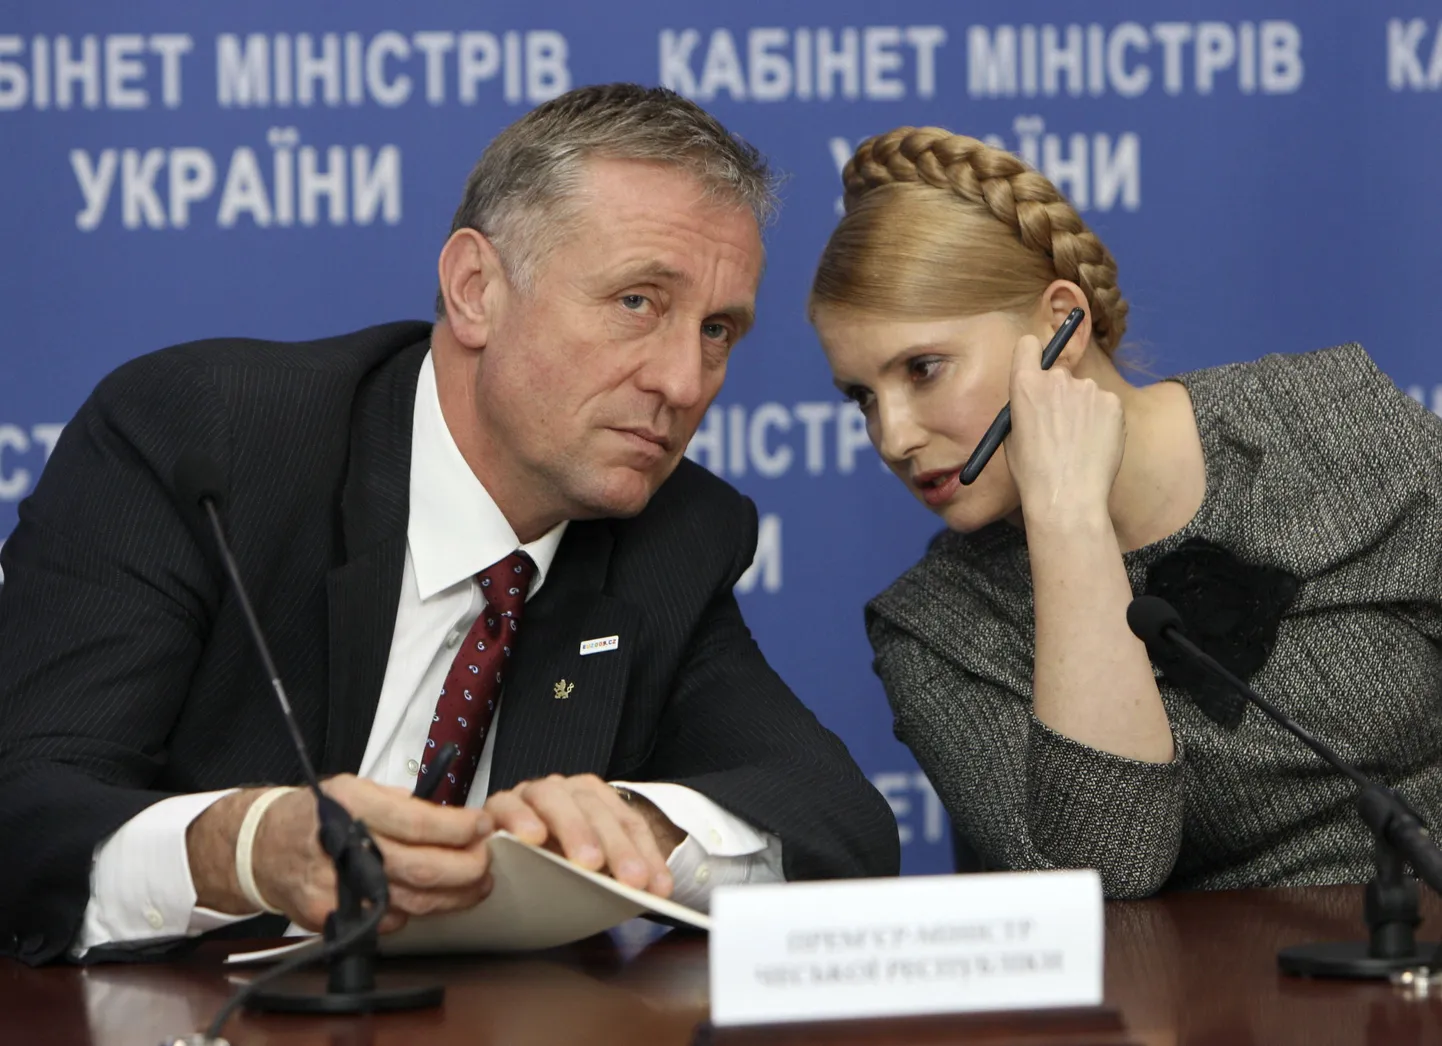 Премьер Украины Юлия Тимошенко во время пресс-конференции с чешским коллегой Миреком Тополанеком.